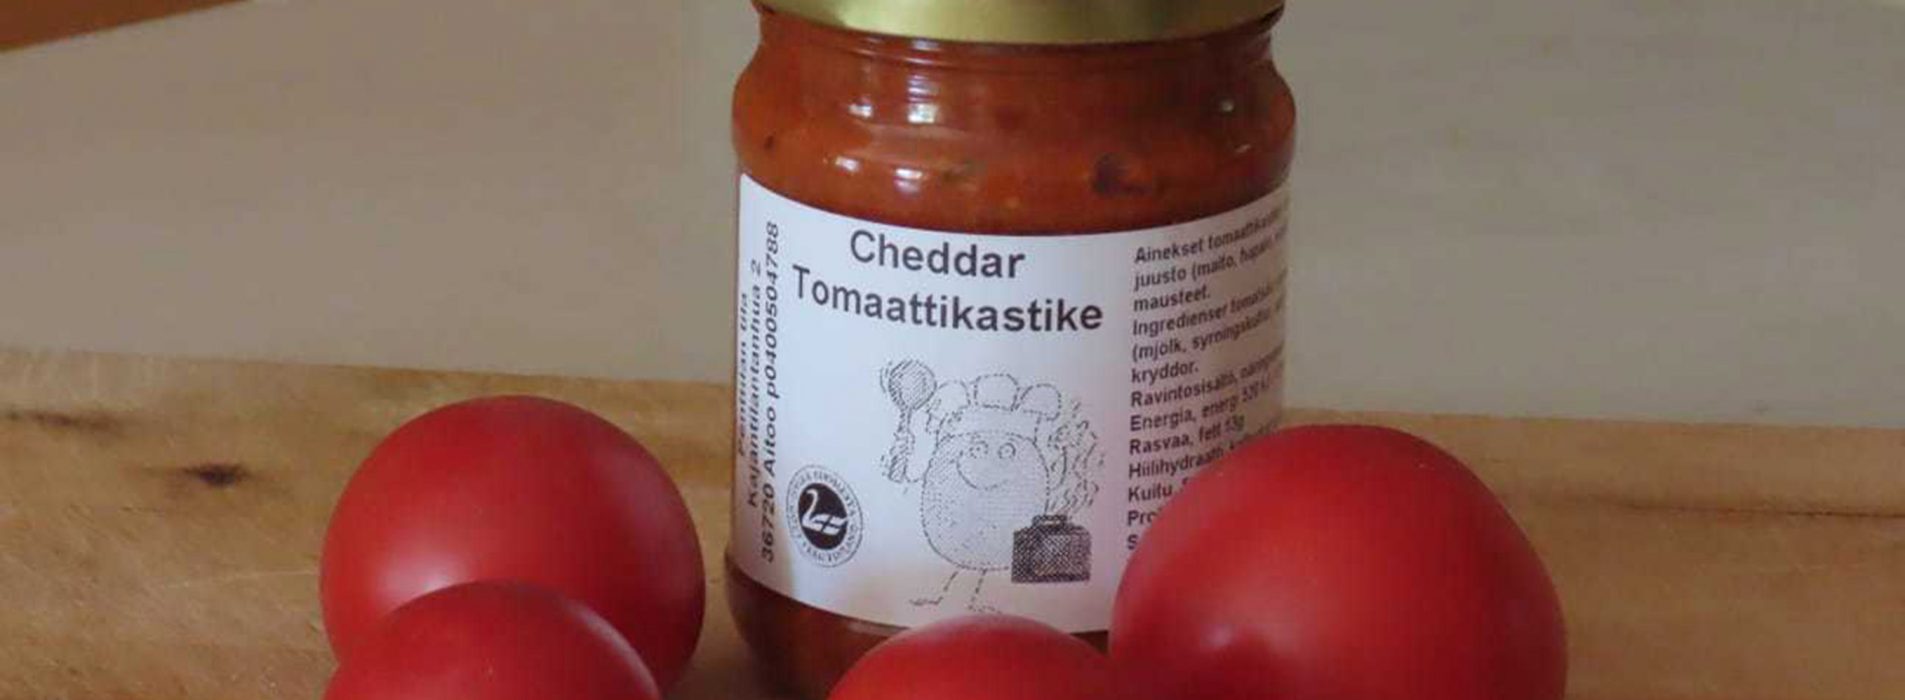 Aitoo Cheddar-tomaattikastike